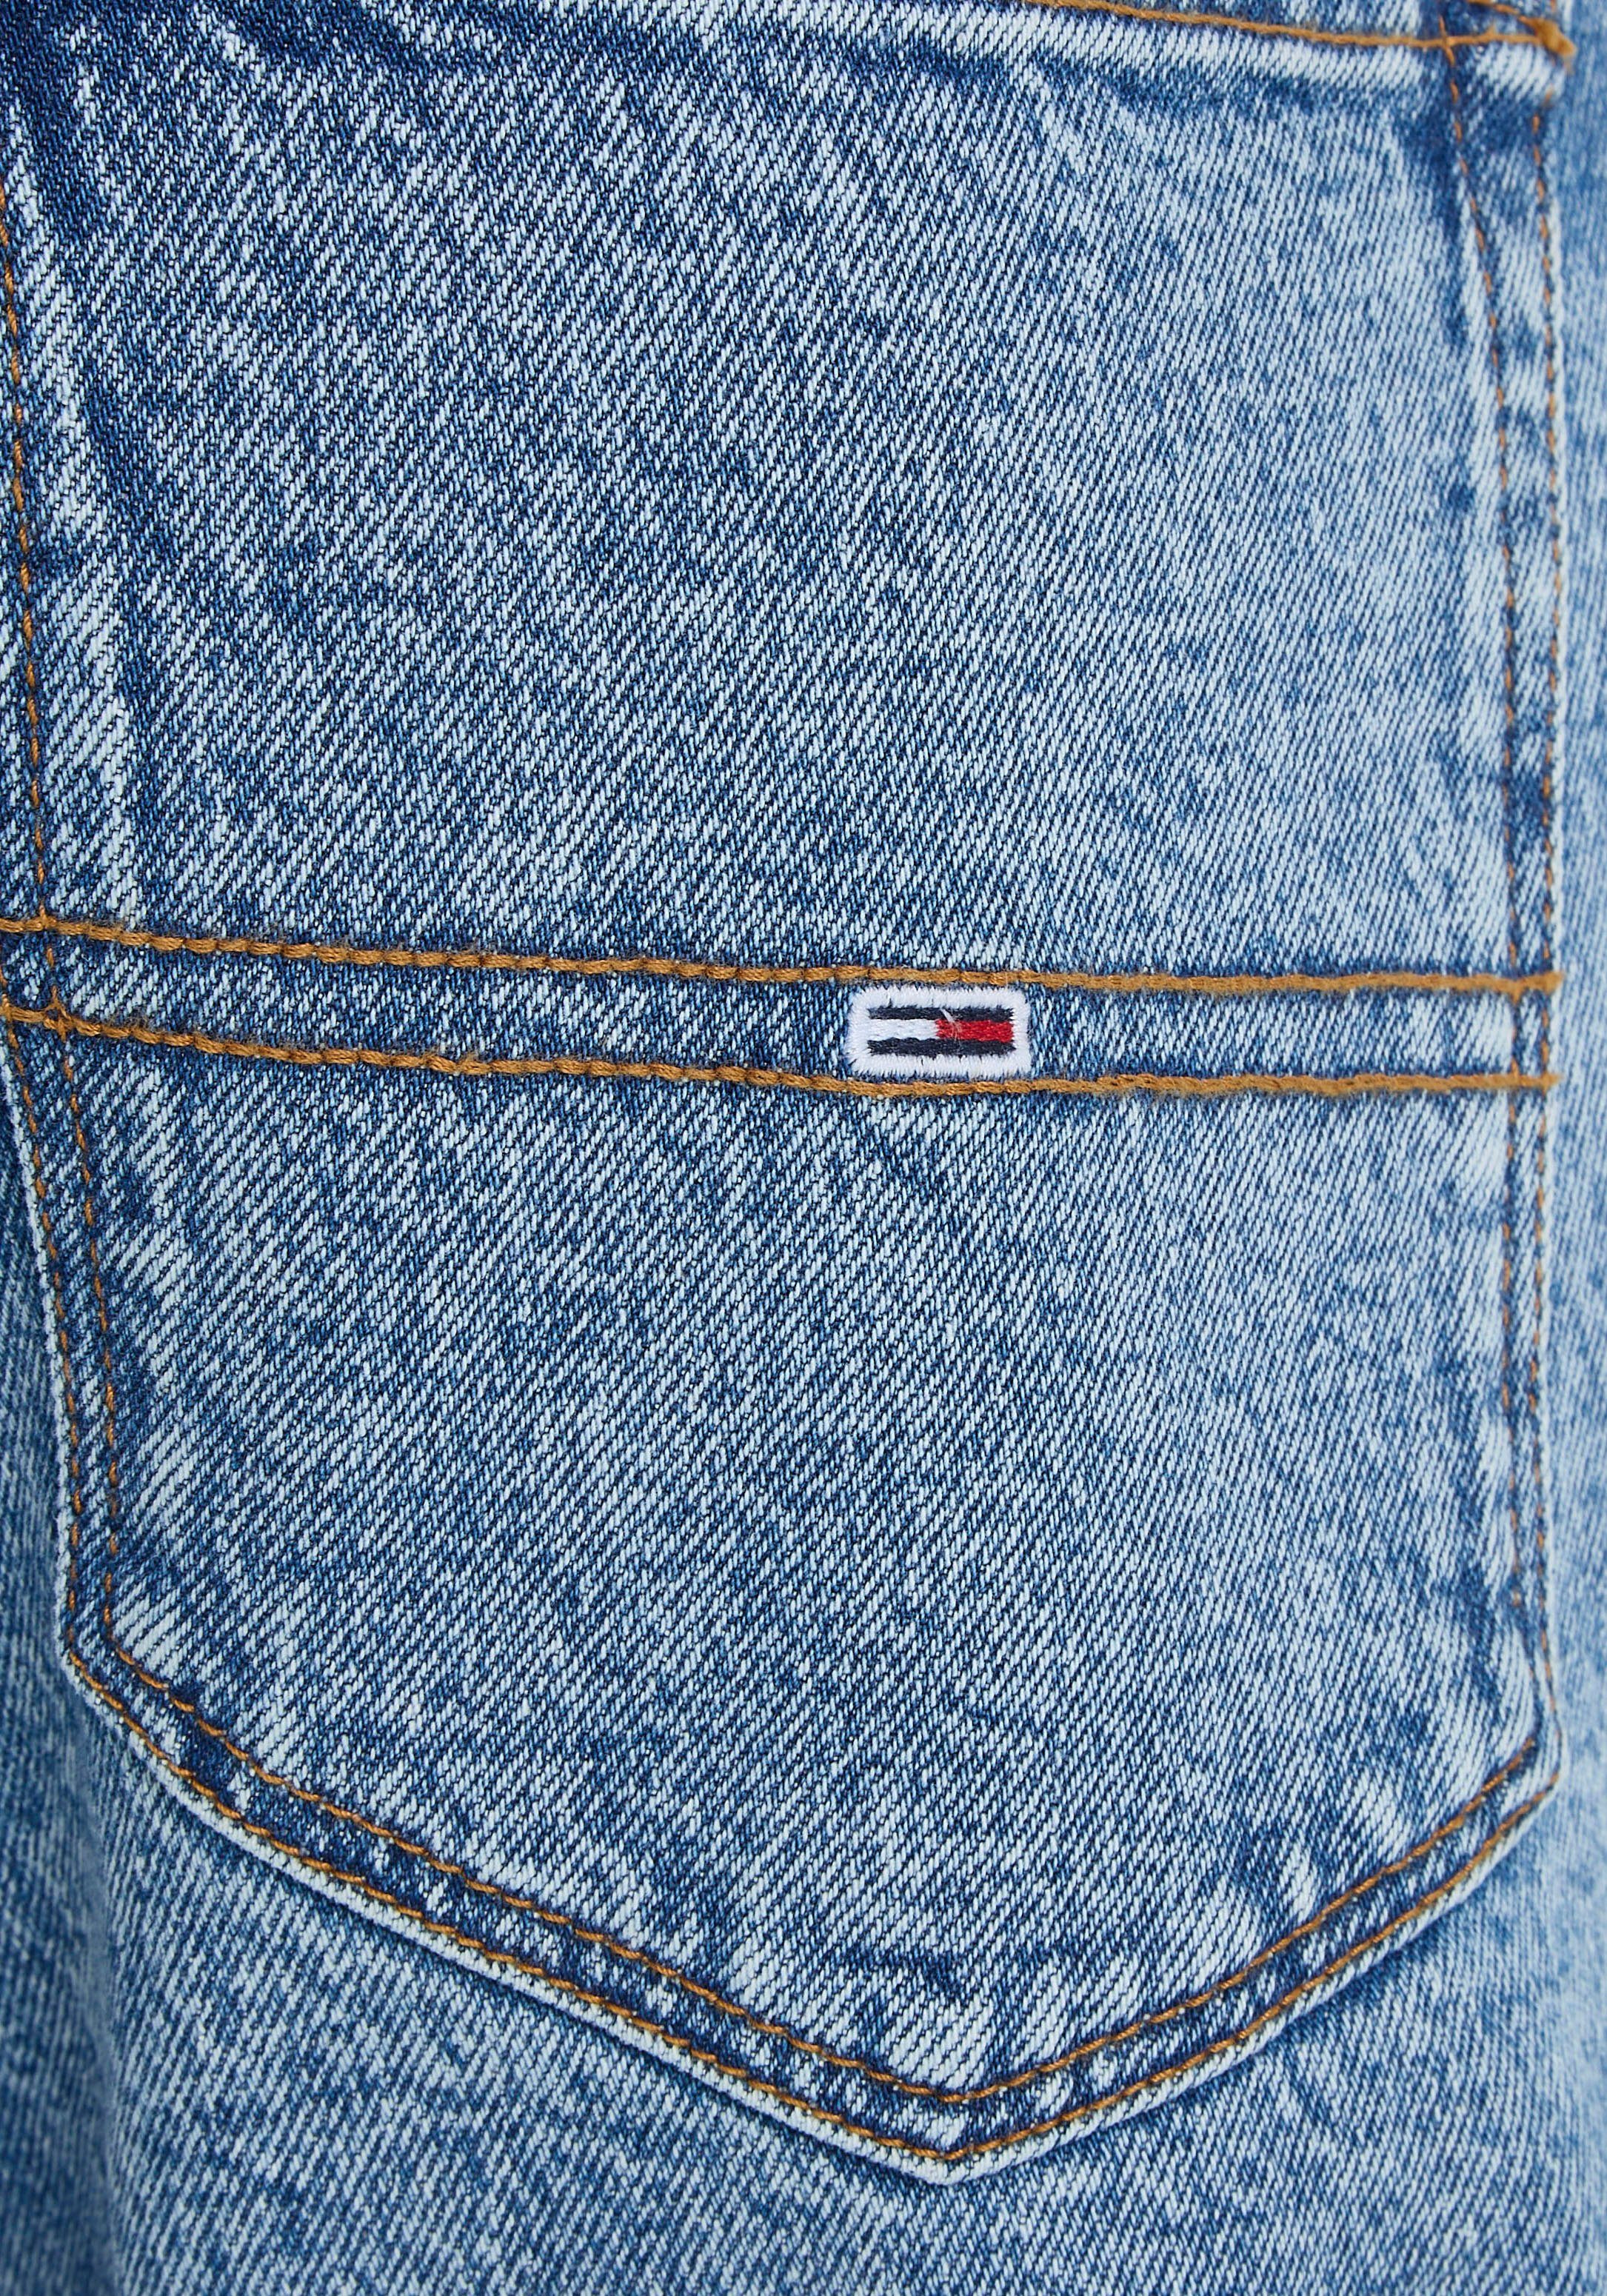 SCANTON 5-Pocket-Jeans Y Denim Jeans SLIM med. Tommy